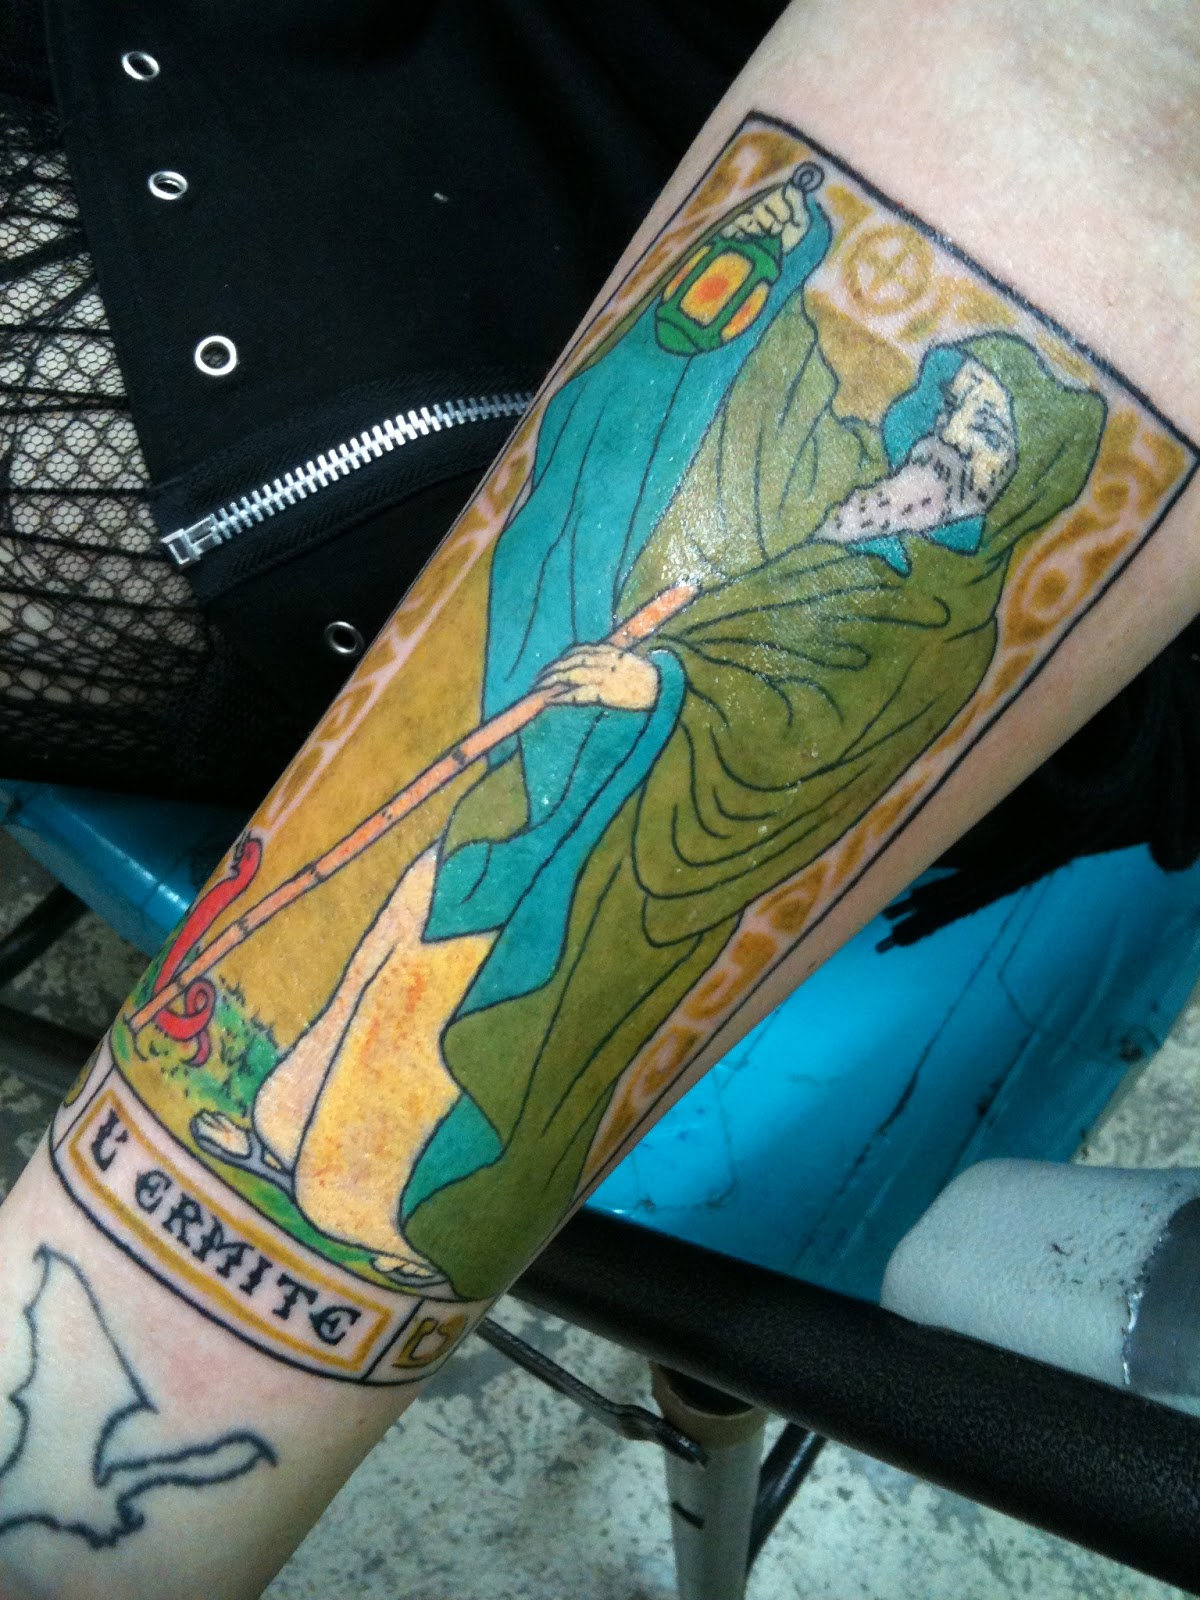 Allison Eckfeldt: My Hermit Tarot Card tattoo on my left arm